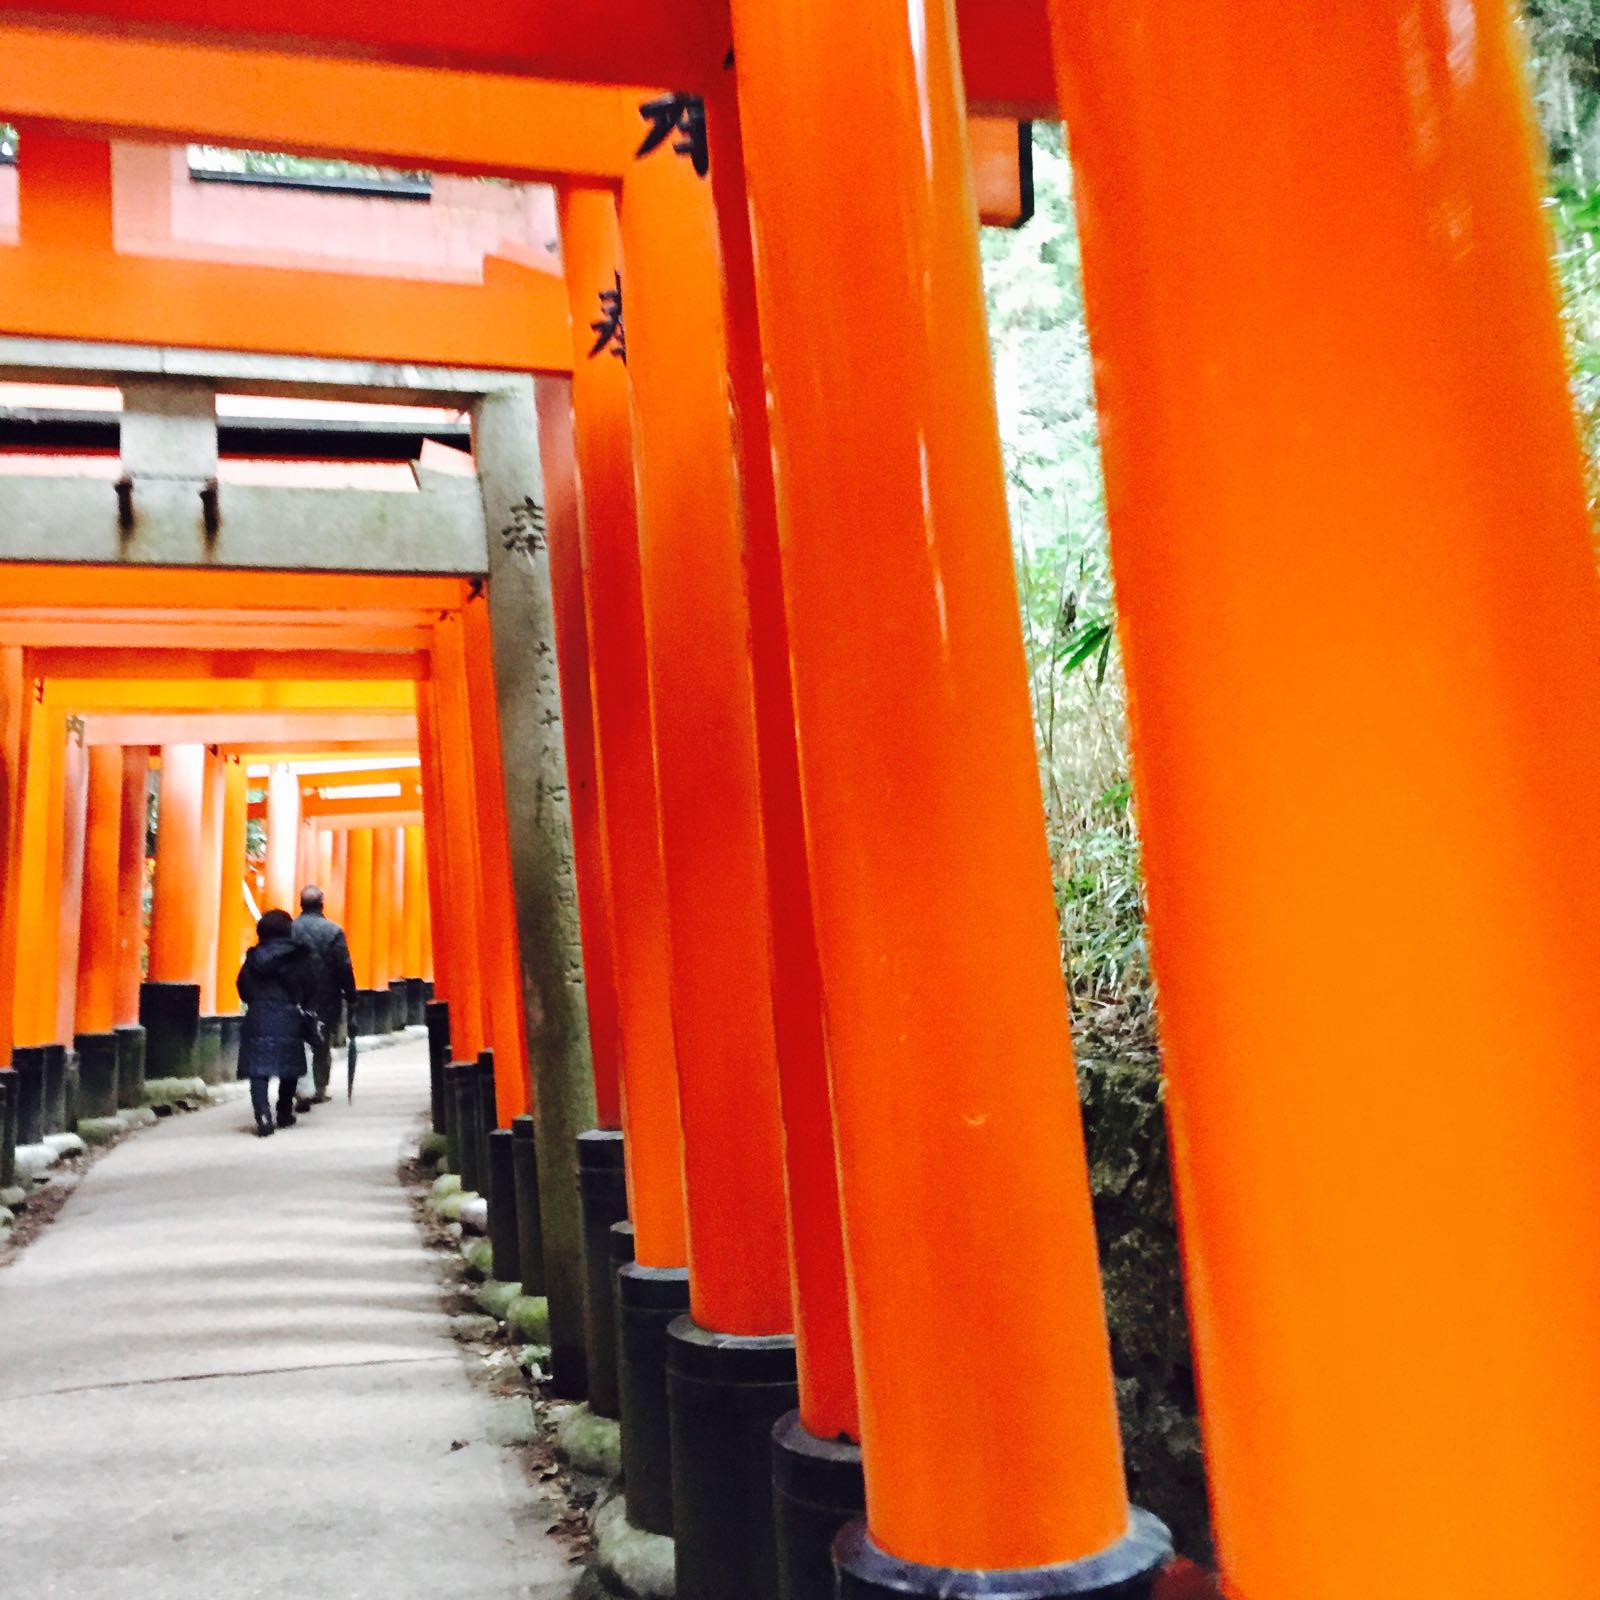 伏见稻荷神社是京都最有名的神社了，以层层千鸟居著称。 实际地理位置不在